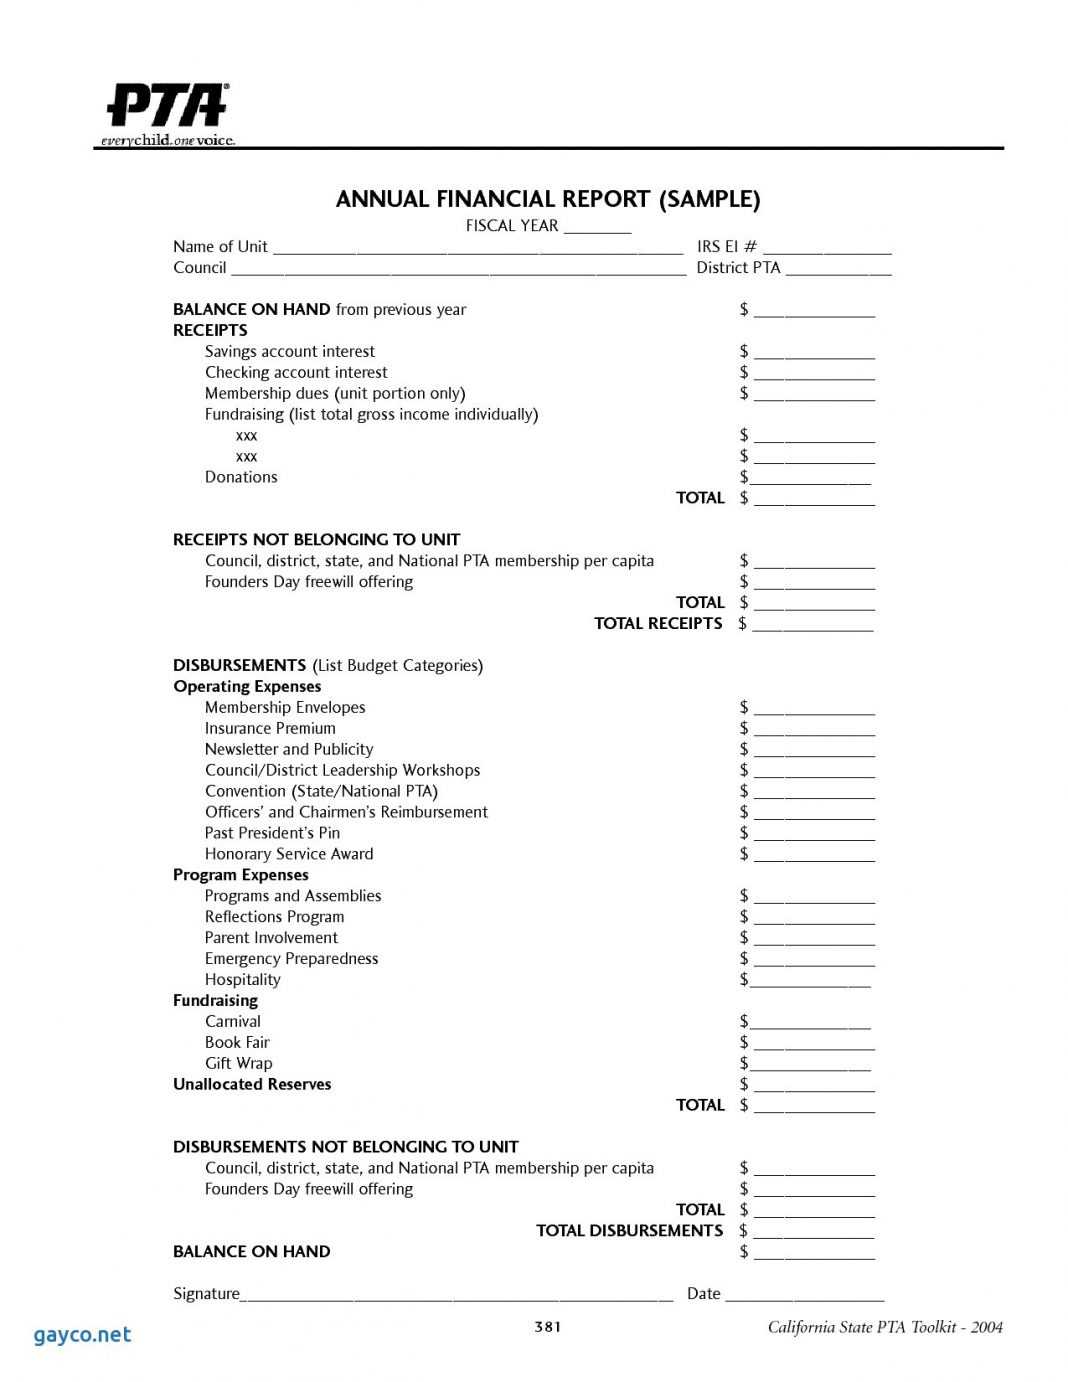 Treasurers Report Template Pdf Treasurer Sample Excel Format With Treasurer's Report Agm Template